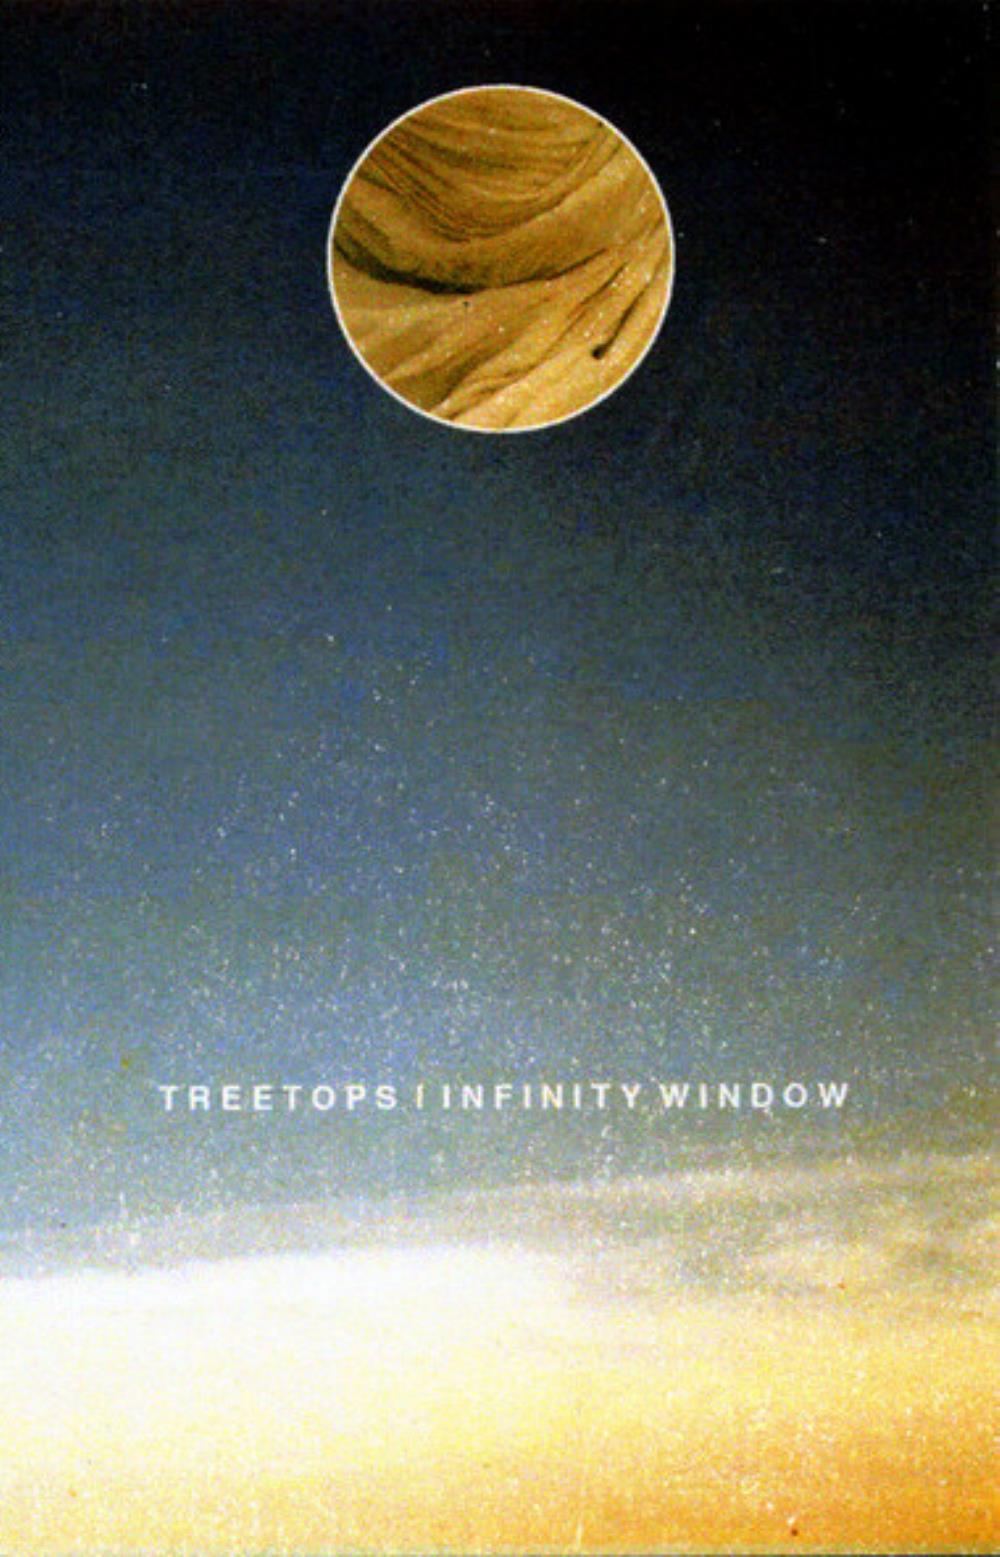 Infinity Window Treetops / Infinity Window album cover